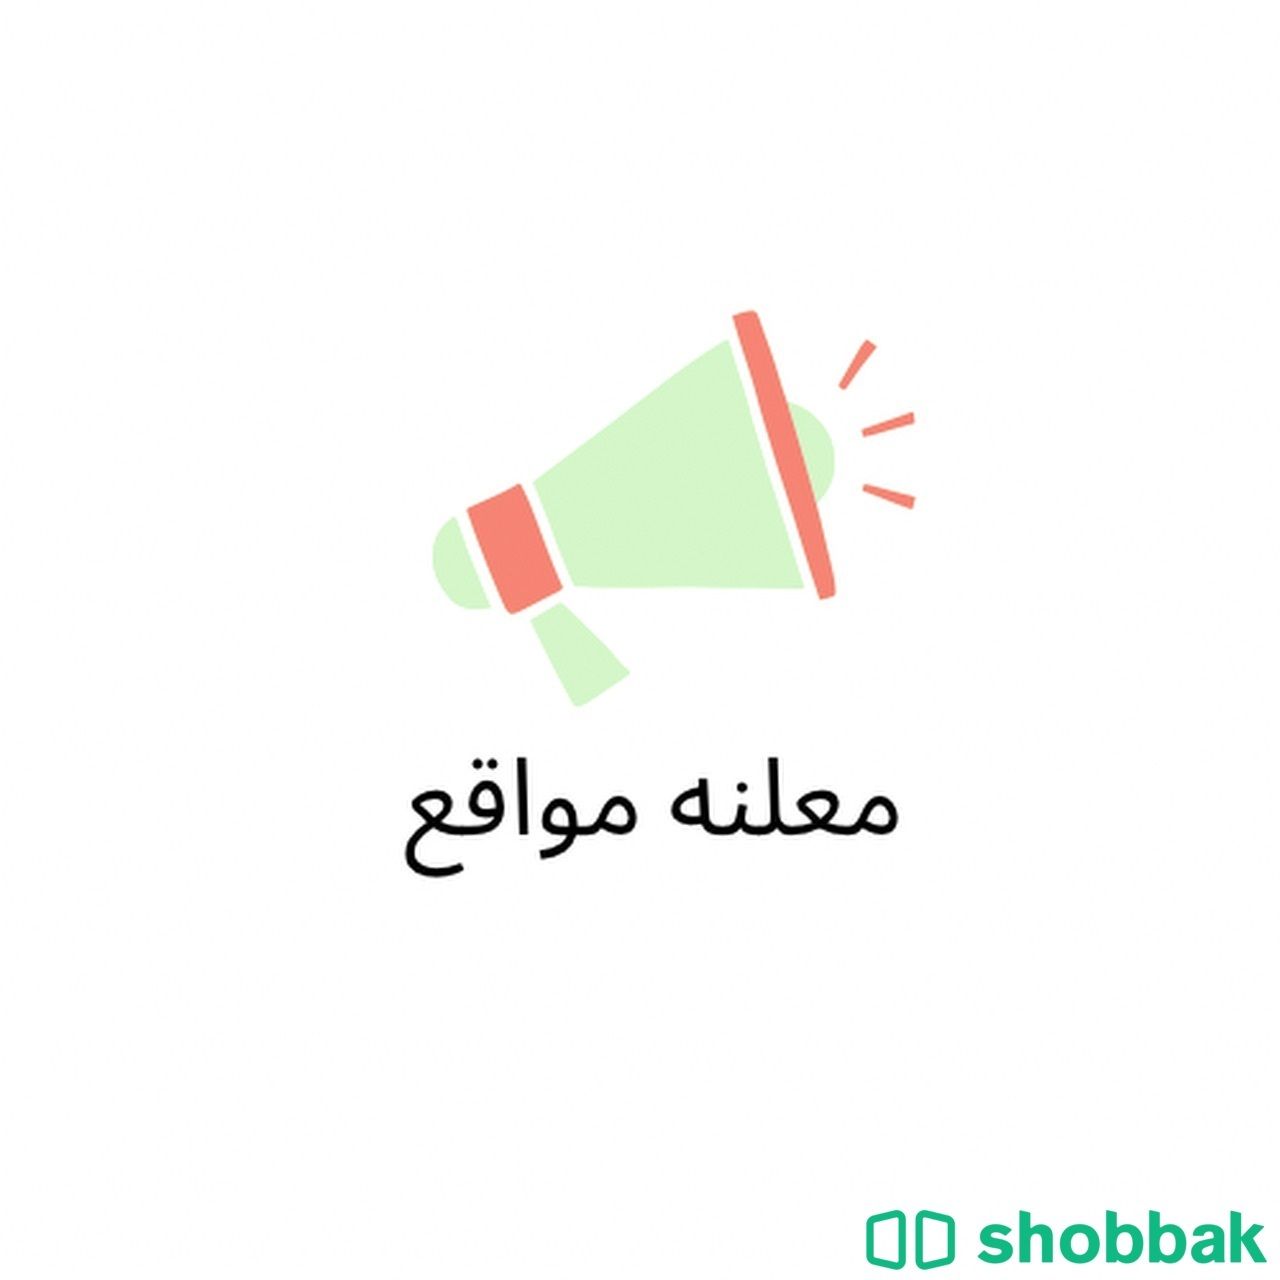 معلنه Shobbak Saudi Arabia